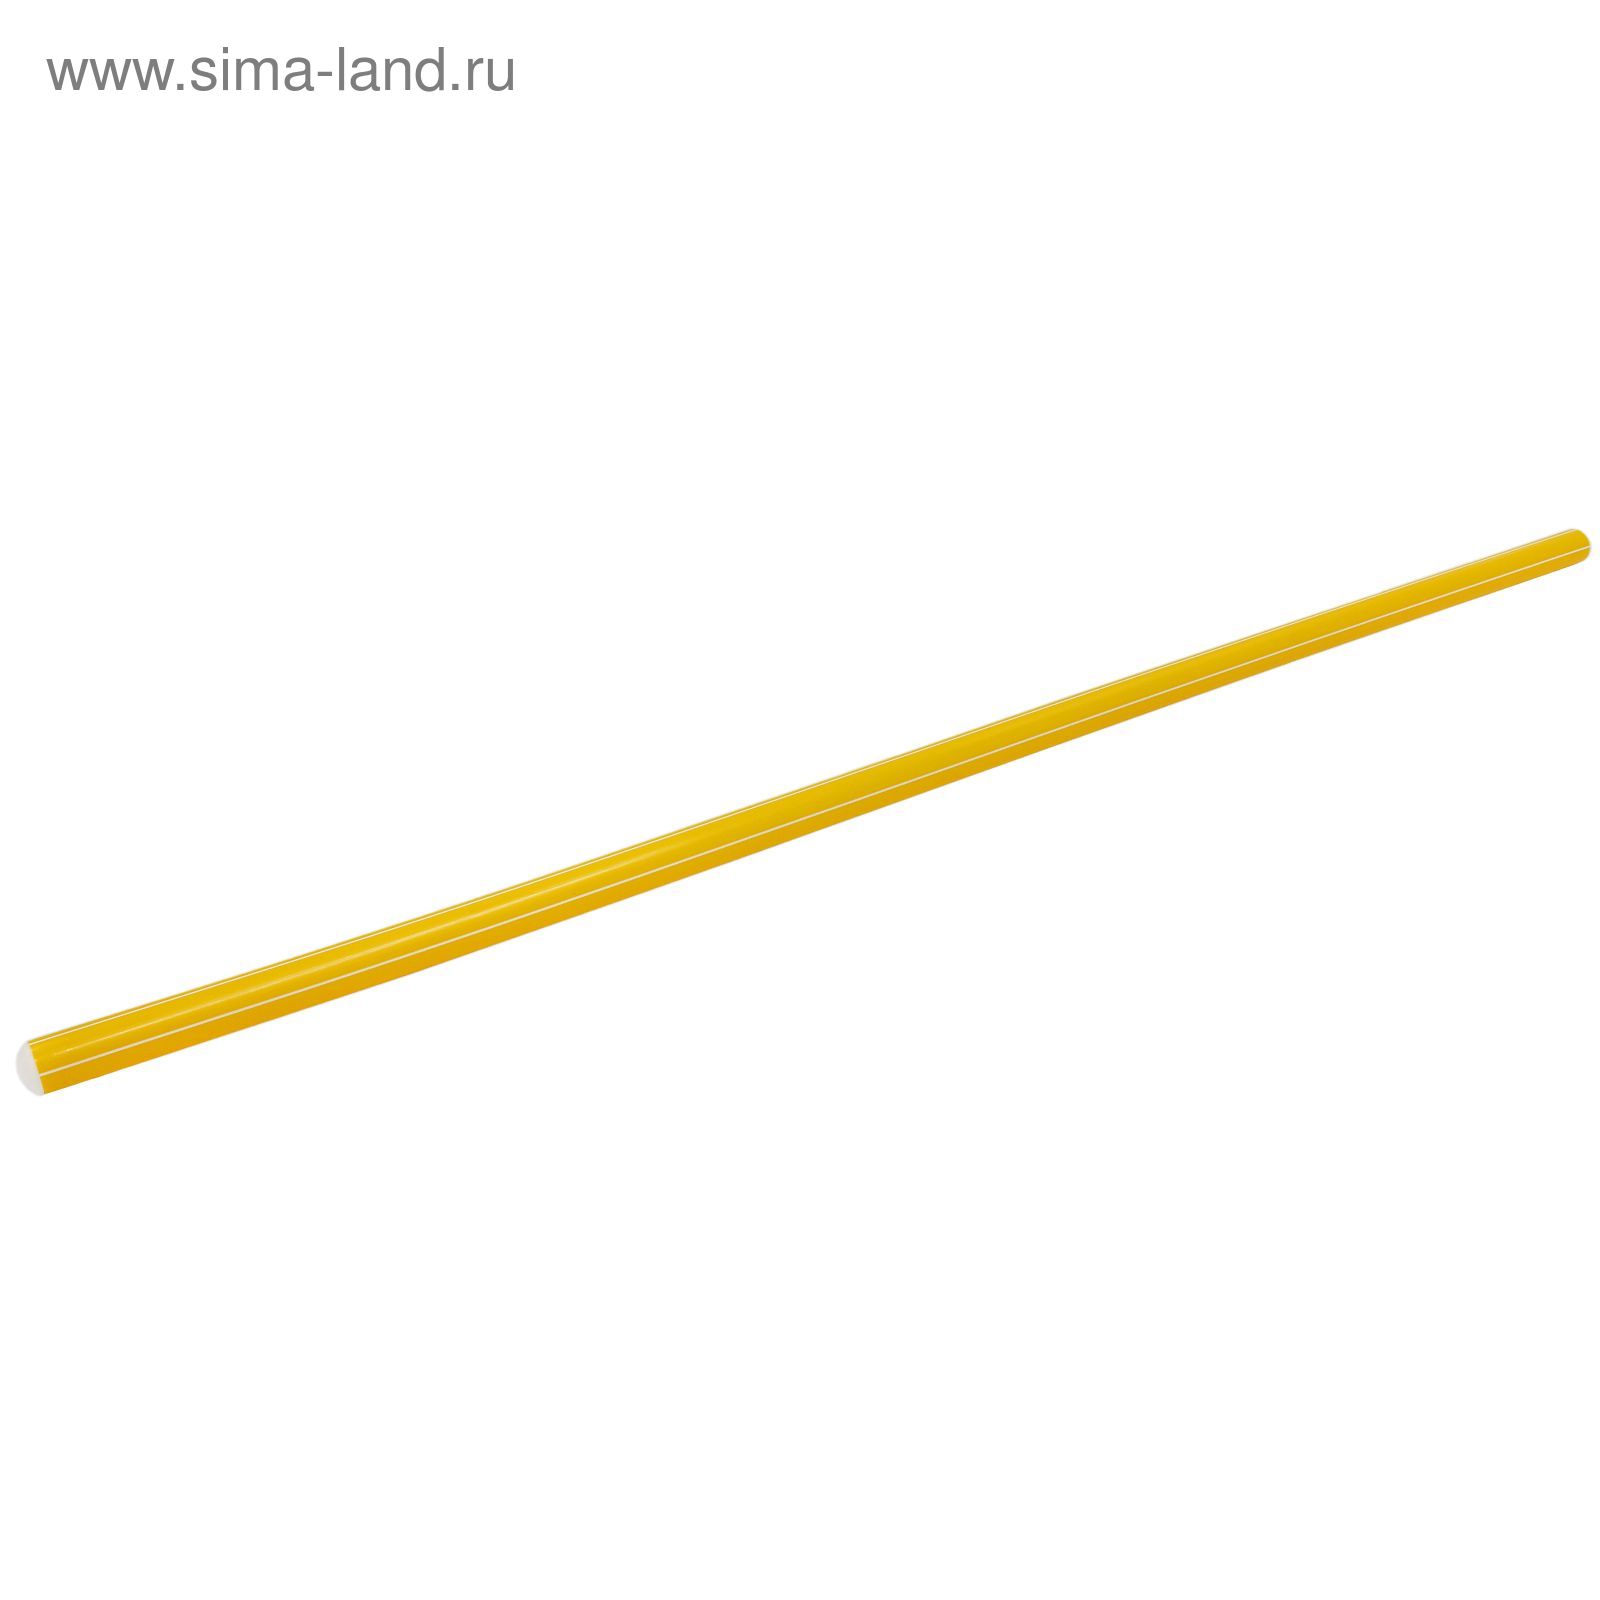 Палка гимнастическая 100 см, цвет: желтый